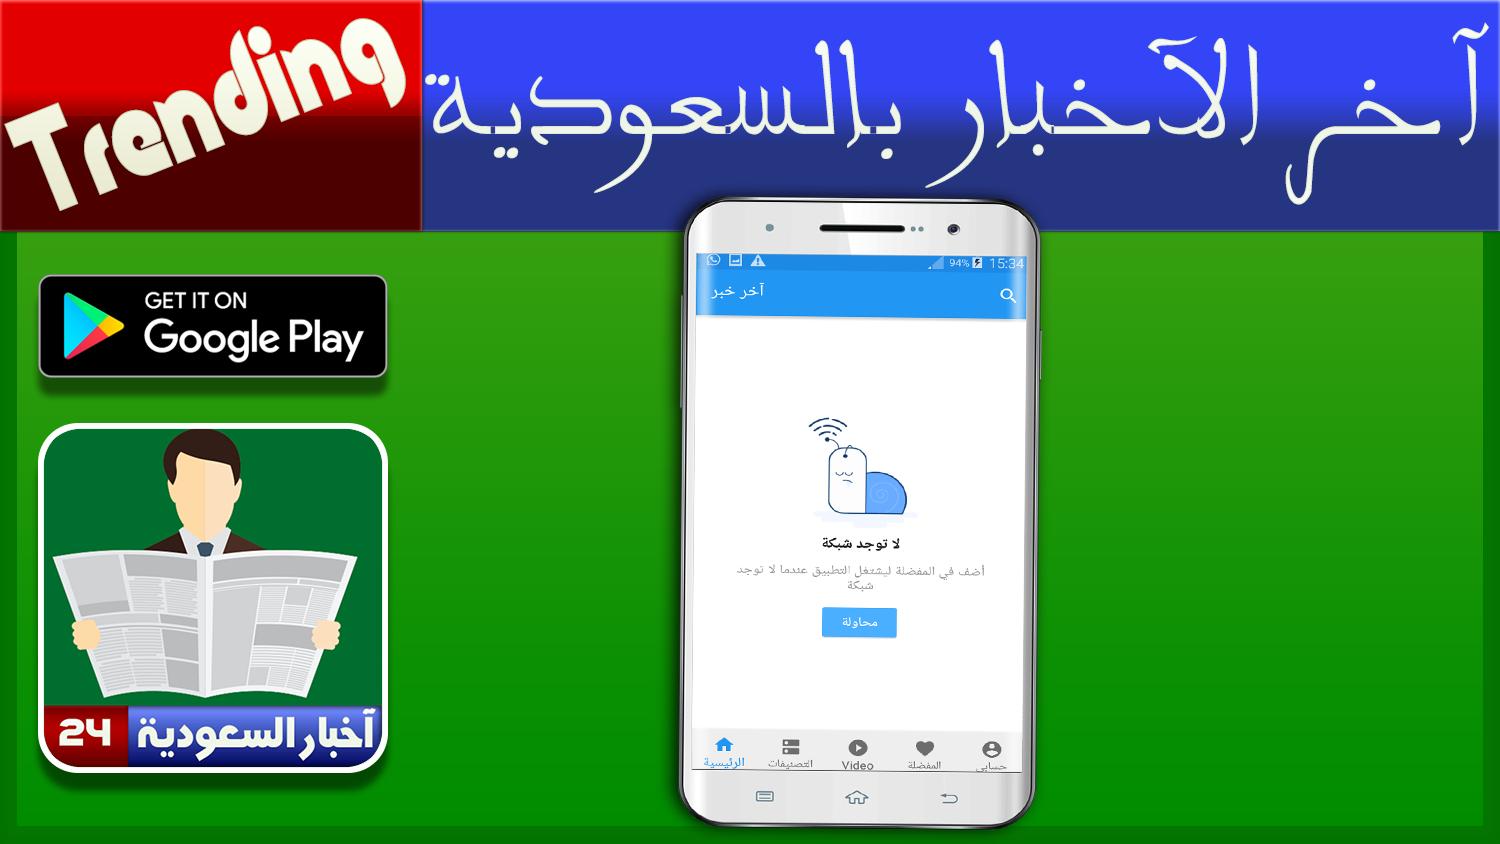 اخبار السعودية - جديد الأخبار العاجلة APK for Android Download